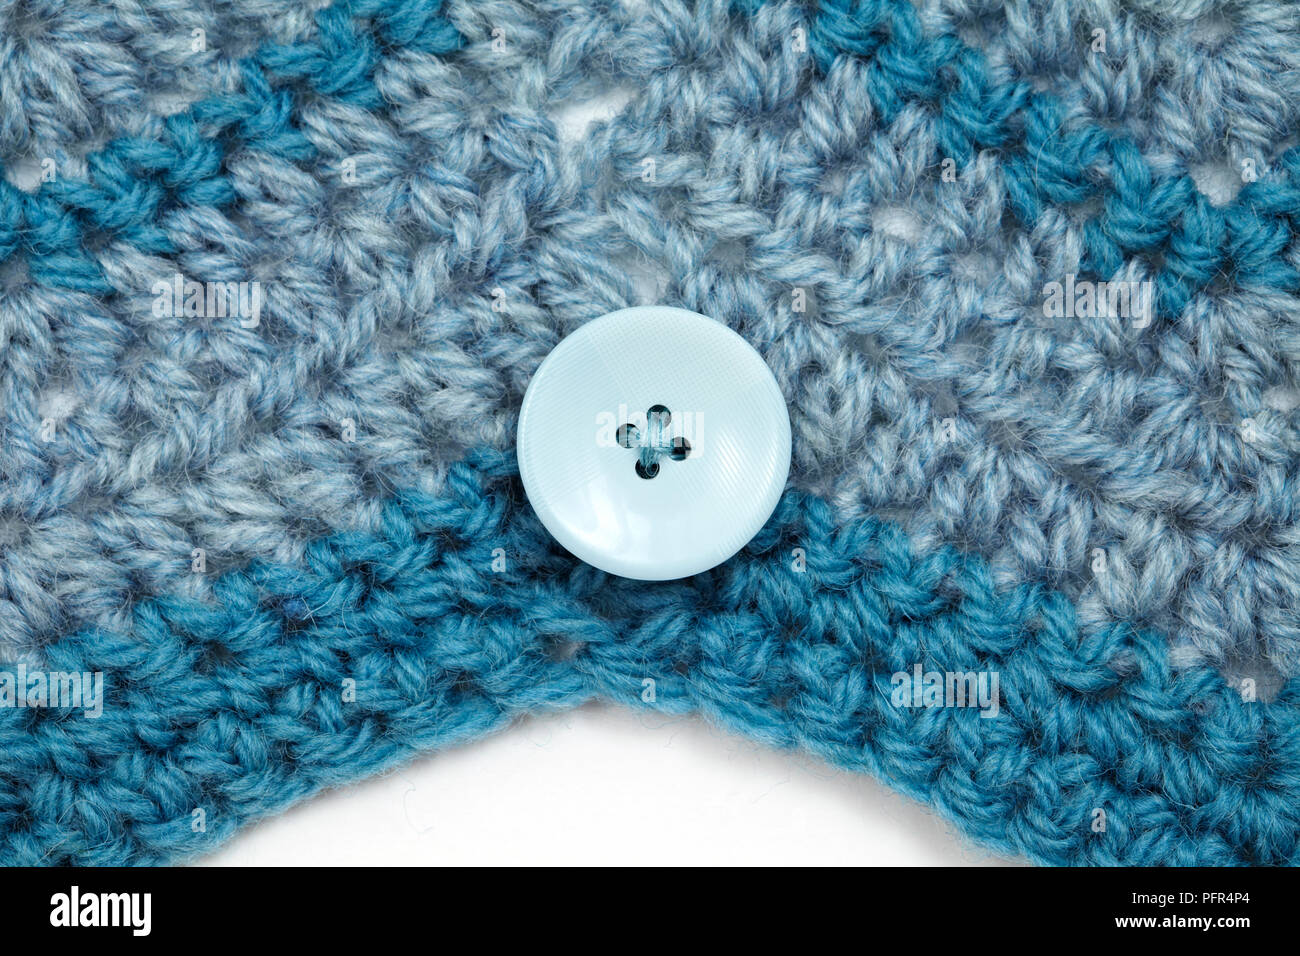 Botón Detalles sobre ganchillo cosido en zig-zag, funda de cojín Foto de stock